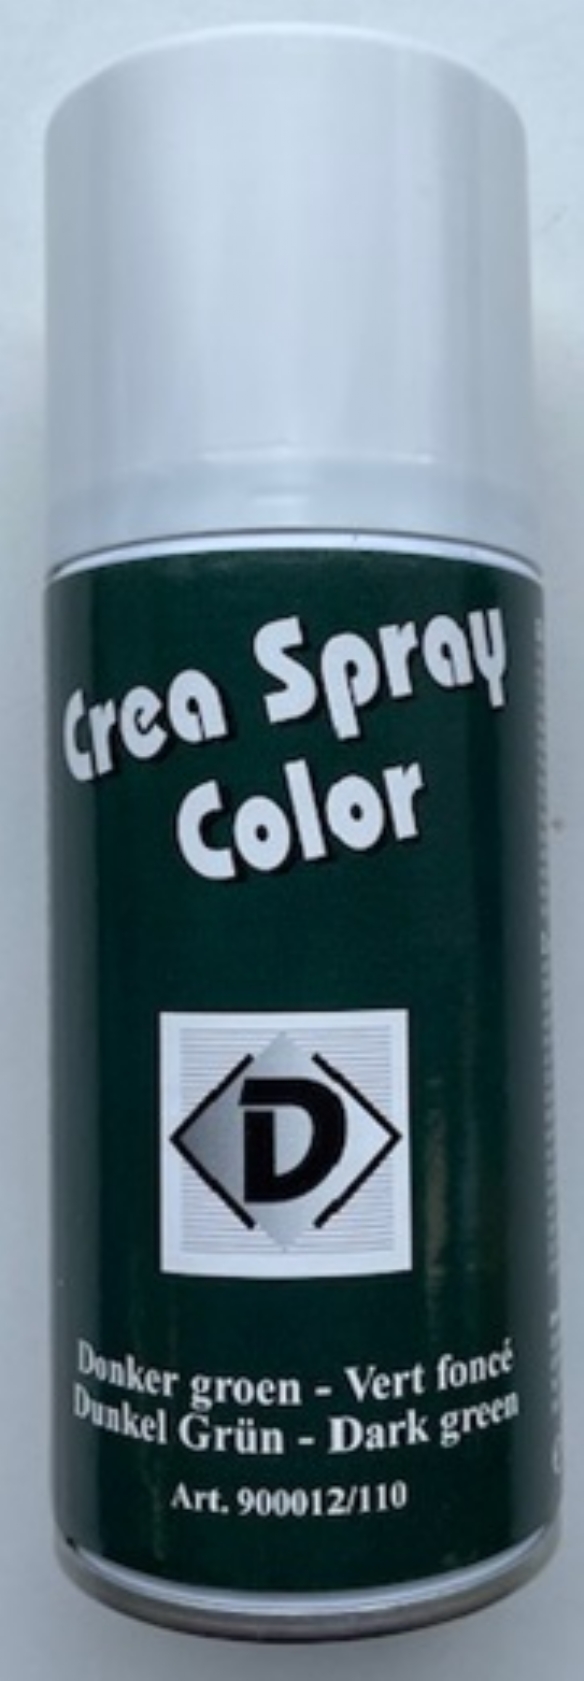 lijden Achterhouden Parelachtig OUTLET Crea spray color, 150 ml, donkergroen kopen? | LTC Leiden